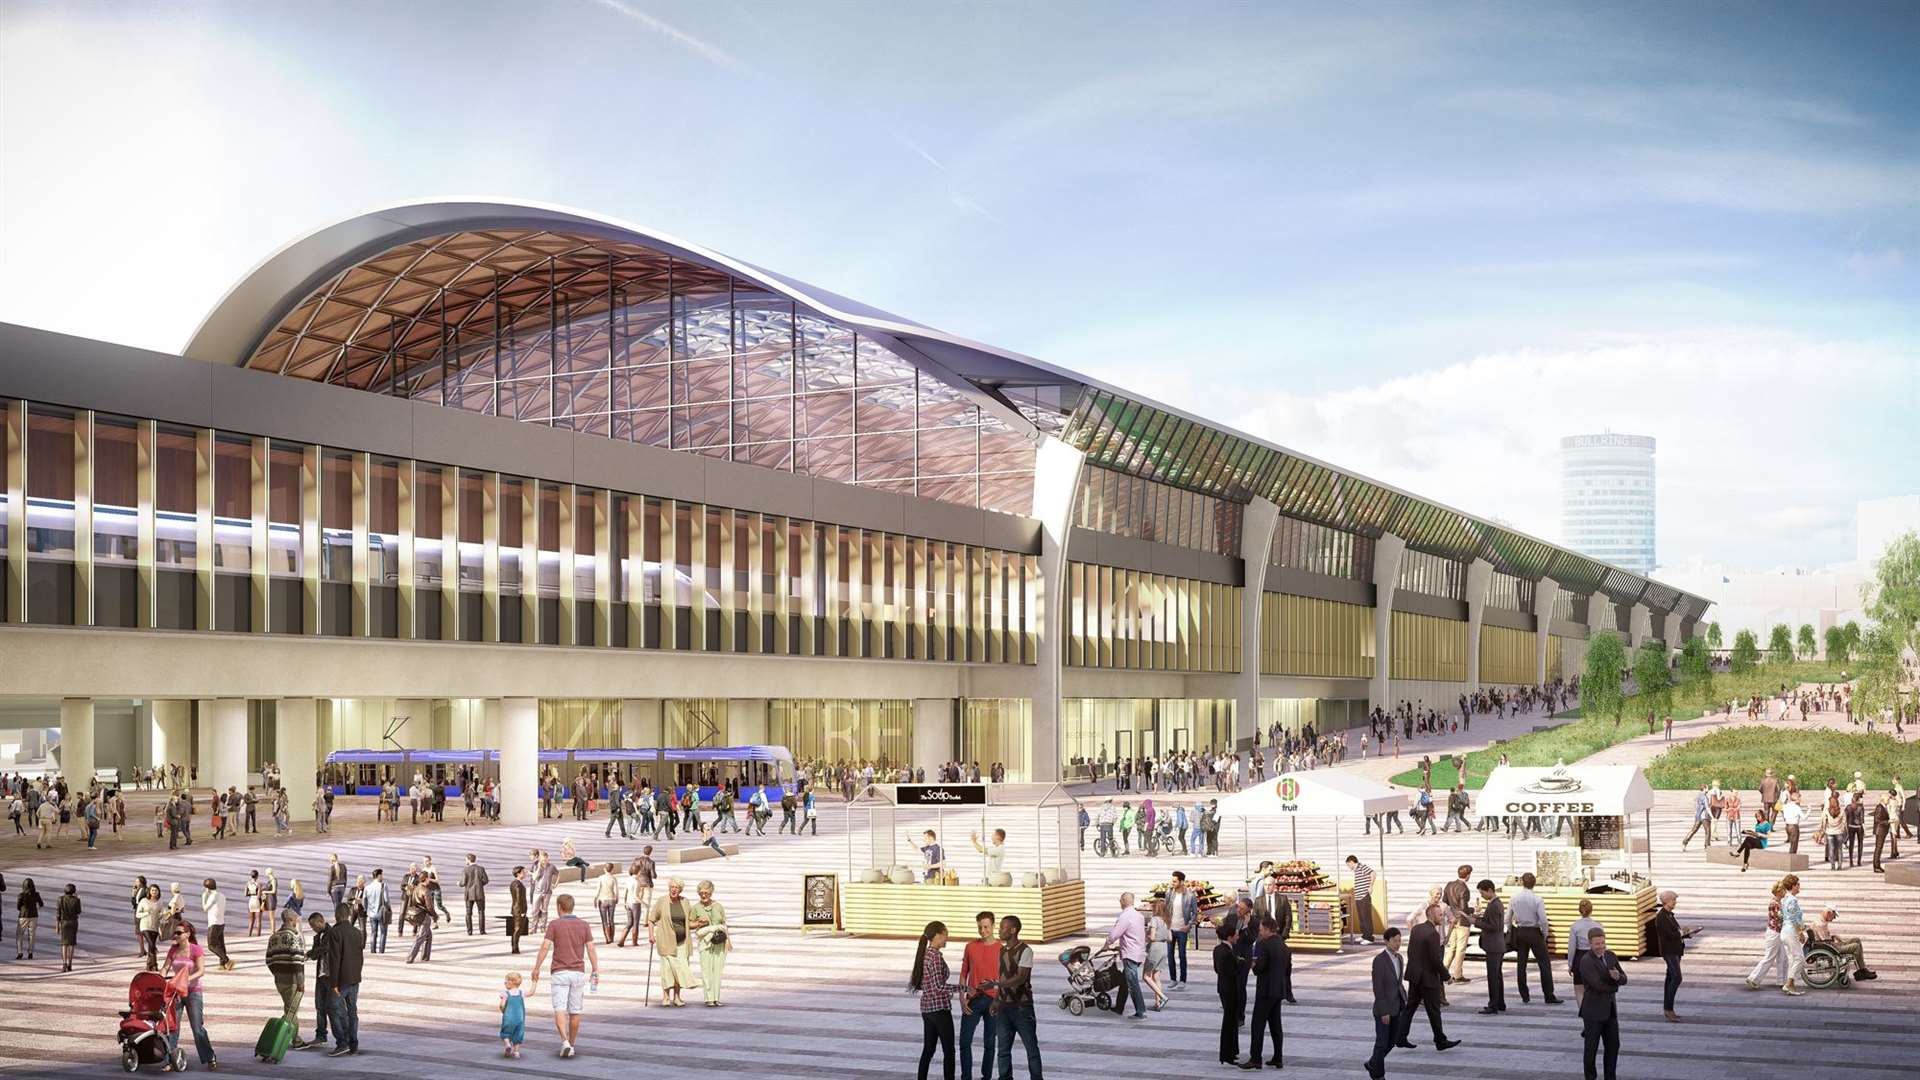 La construction serait à quelques pas de la station HS2 Curzon Street prévue, qui devrait ouvrir en 2029. (Grimshaw Architects / PA)